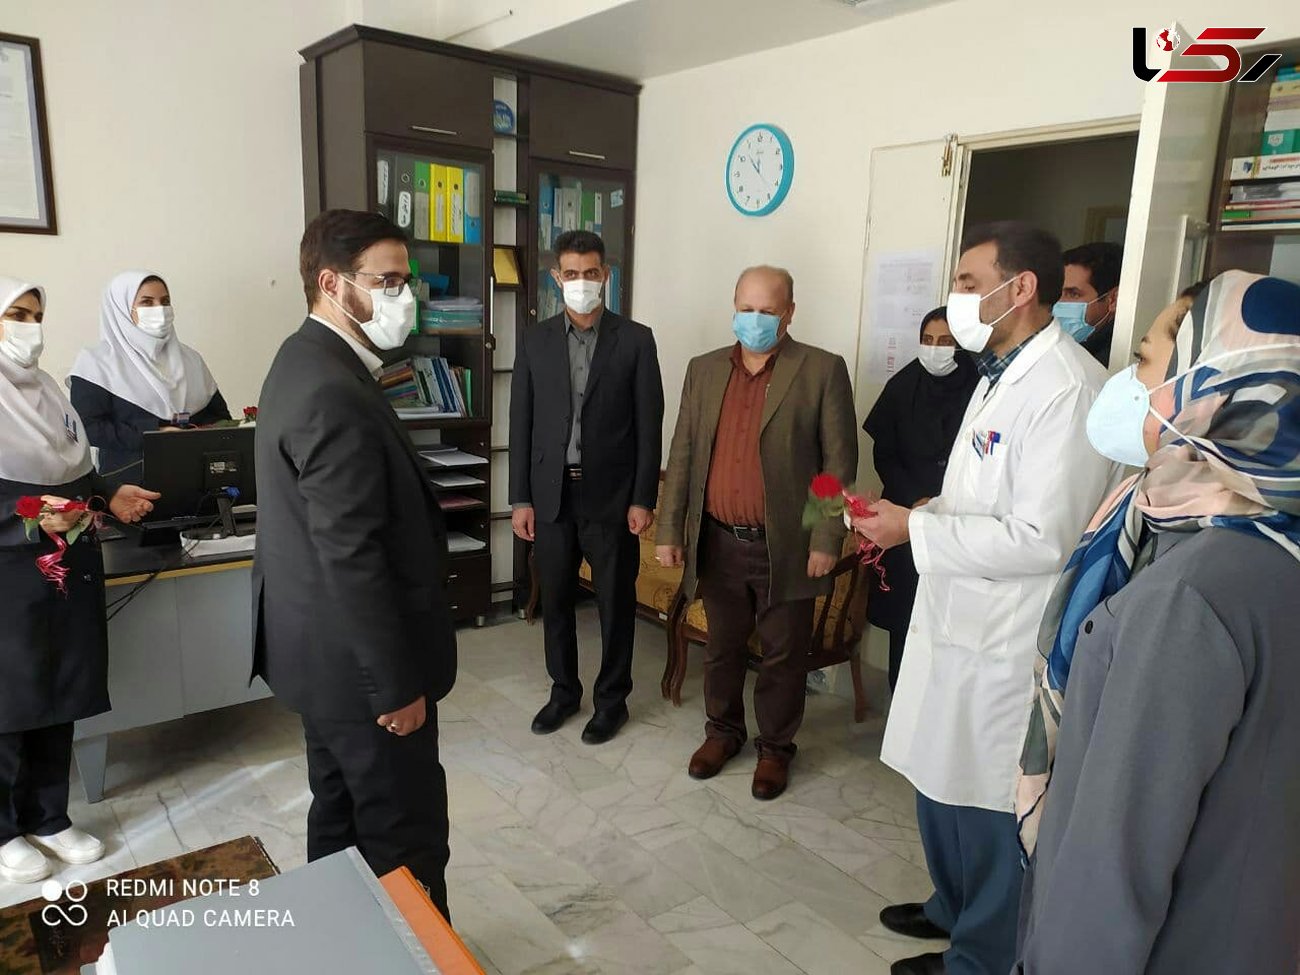 بازدید رئیس دادگستری ودادستان هشترود از بیمارستان این شهر به مناسبت روز پرستار